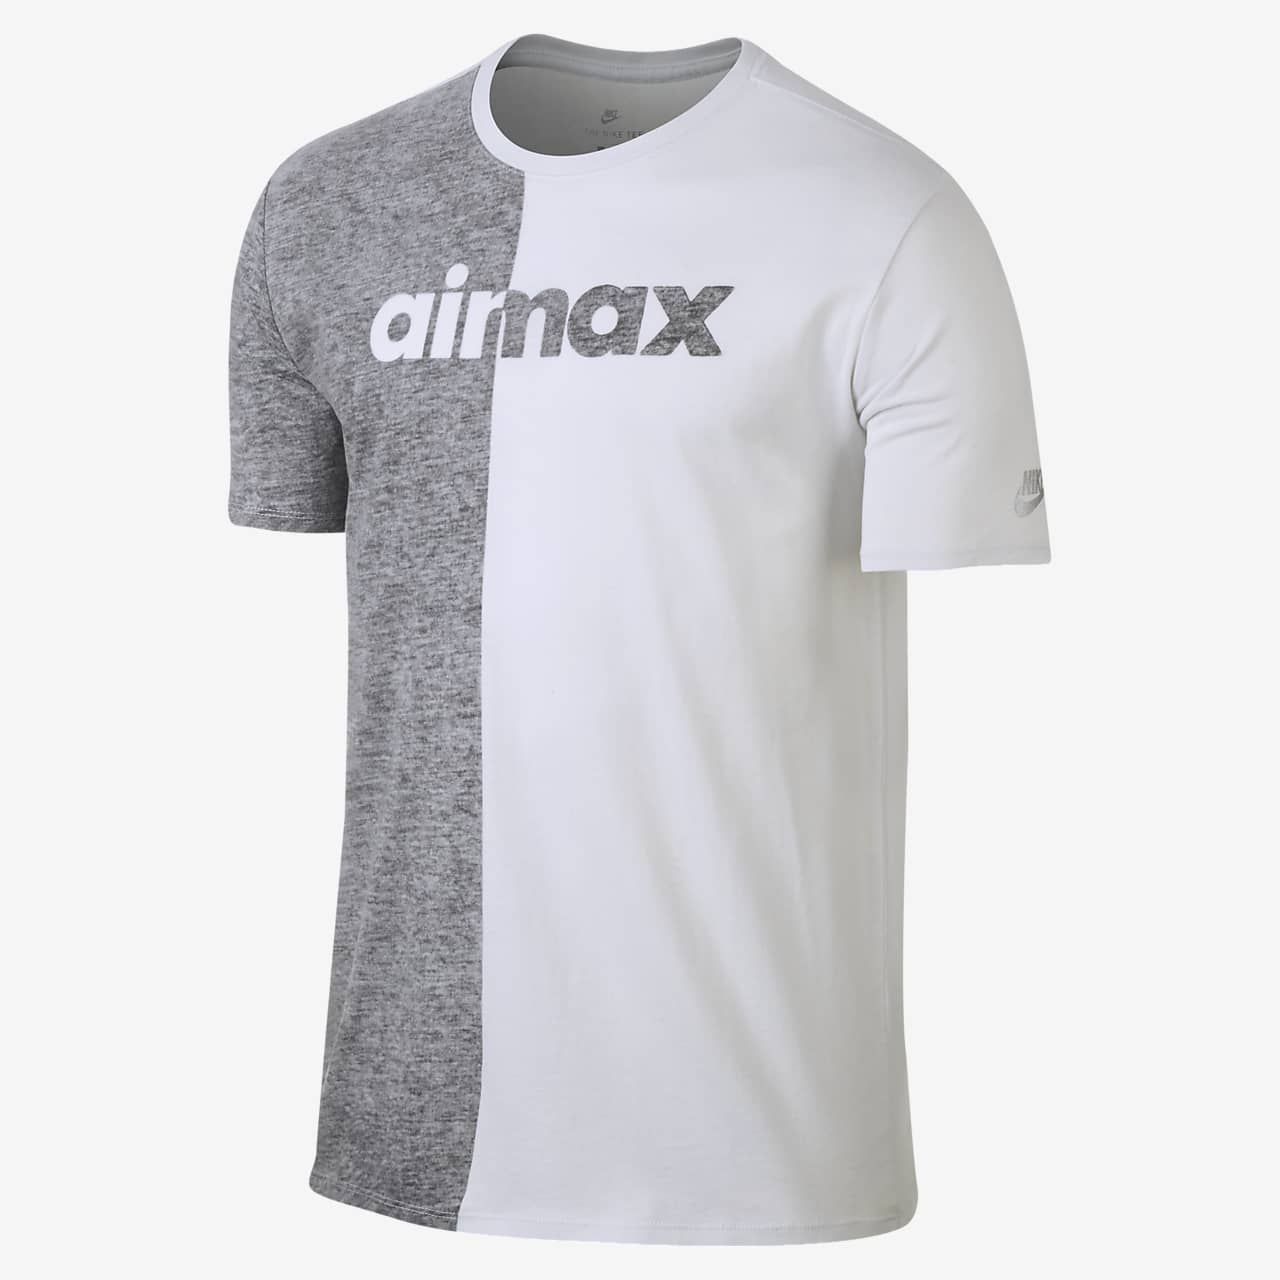 Nike Sportswear Air Max Men's T-Shirt